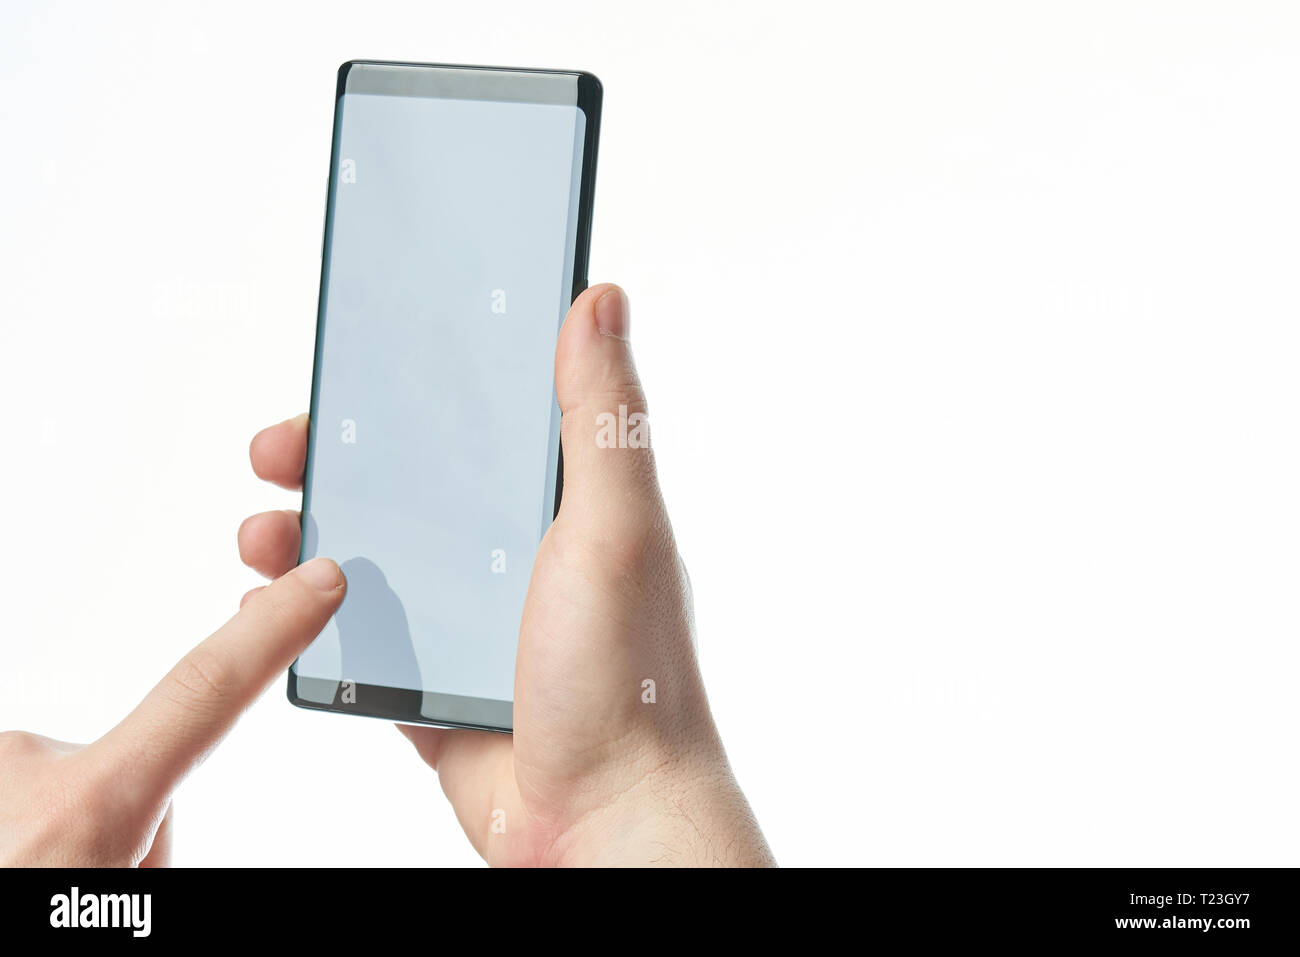 Großbild-Smartphone in der Hand auf weißem Hintergrund Stockfoto